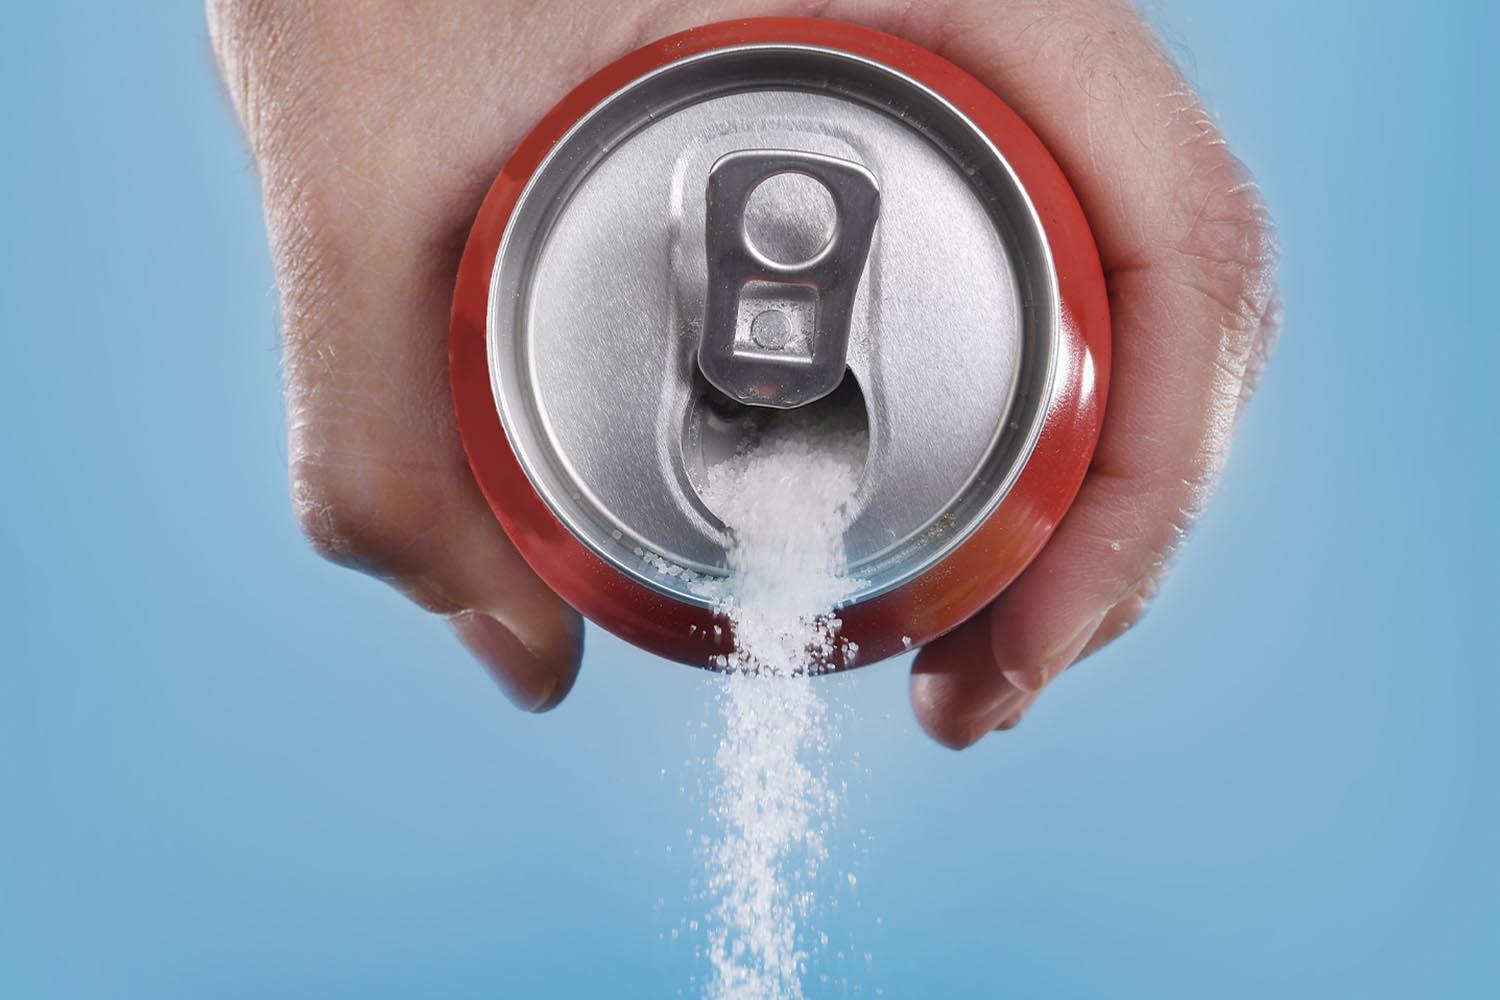 Sugar-sweetened-beverages-linked-risk-SPACEBAR-Hero